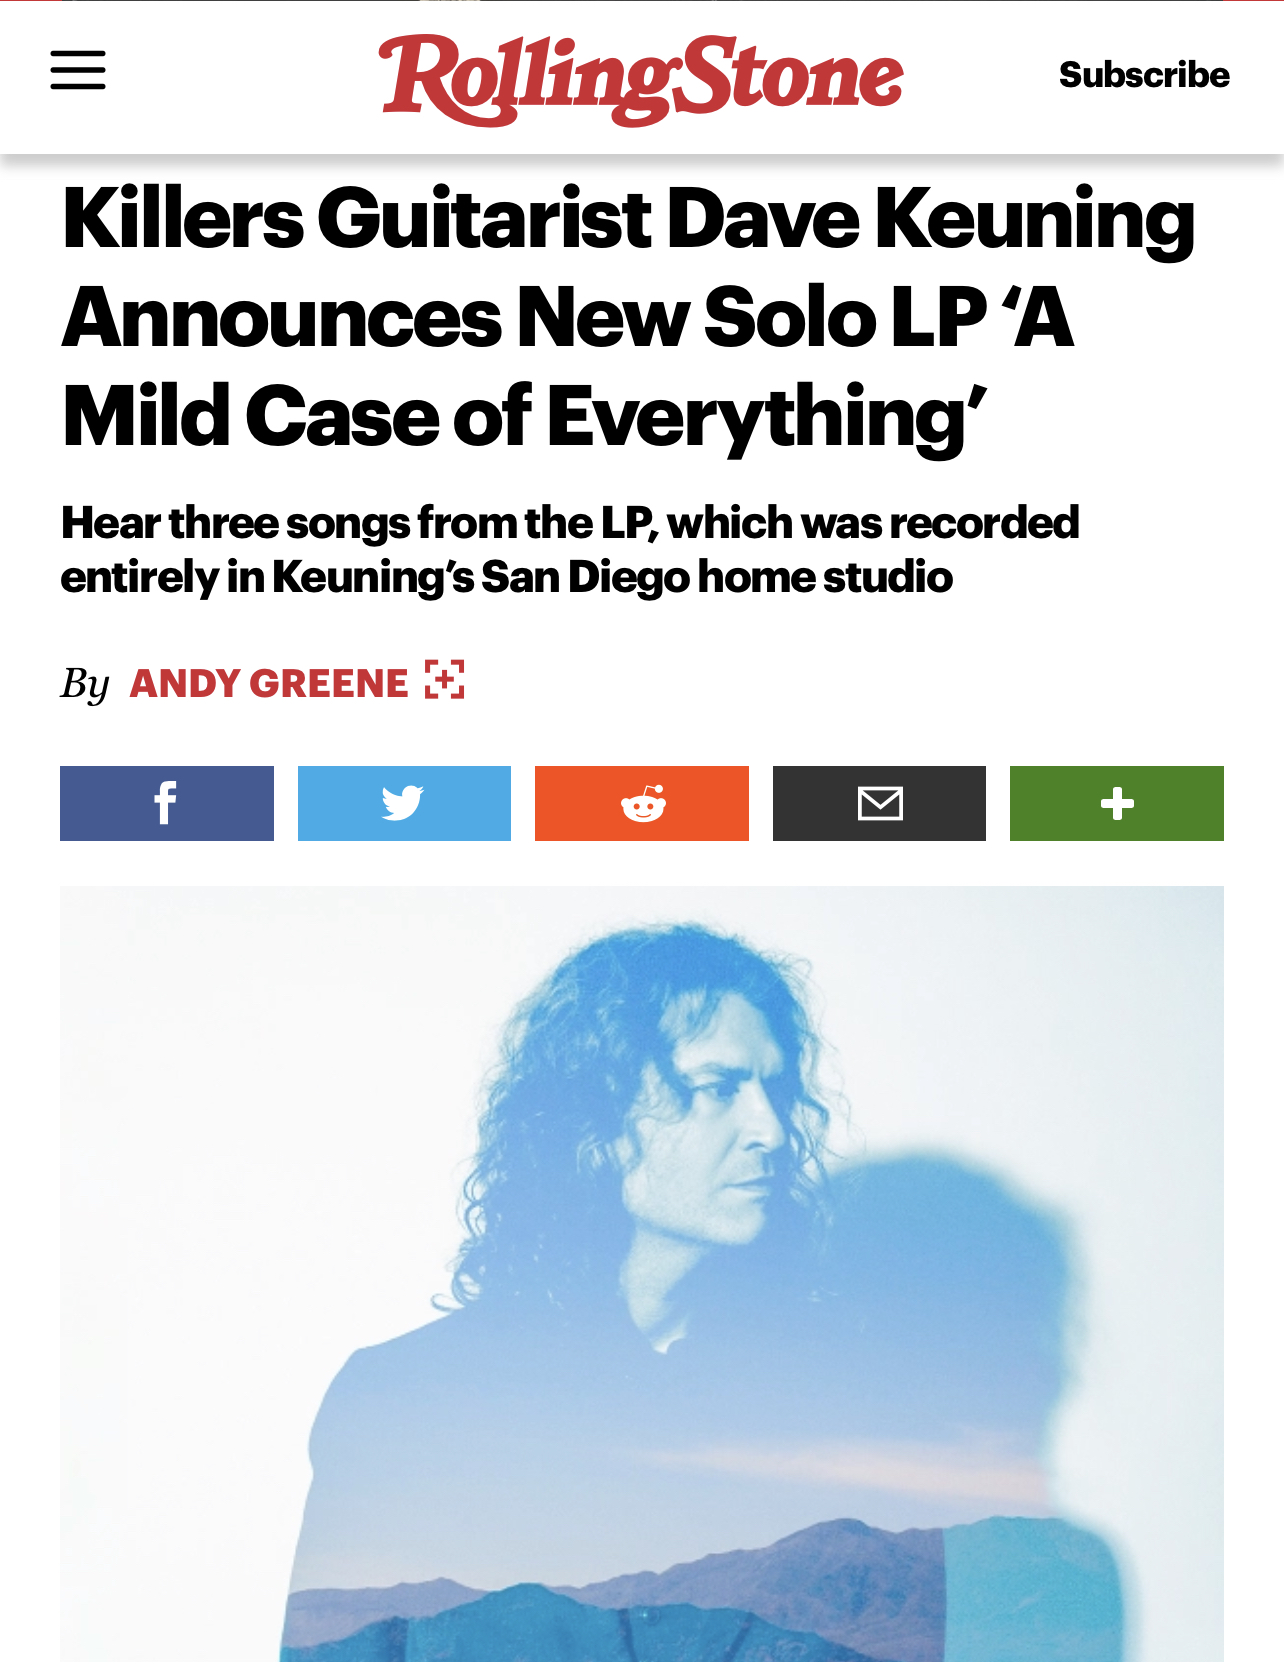 Dave Keuning Rolling Stone Album Announcement